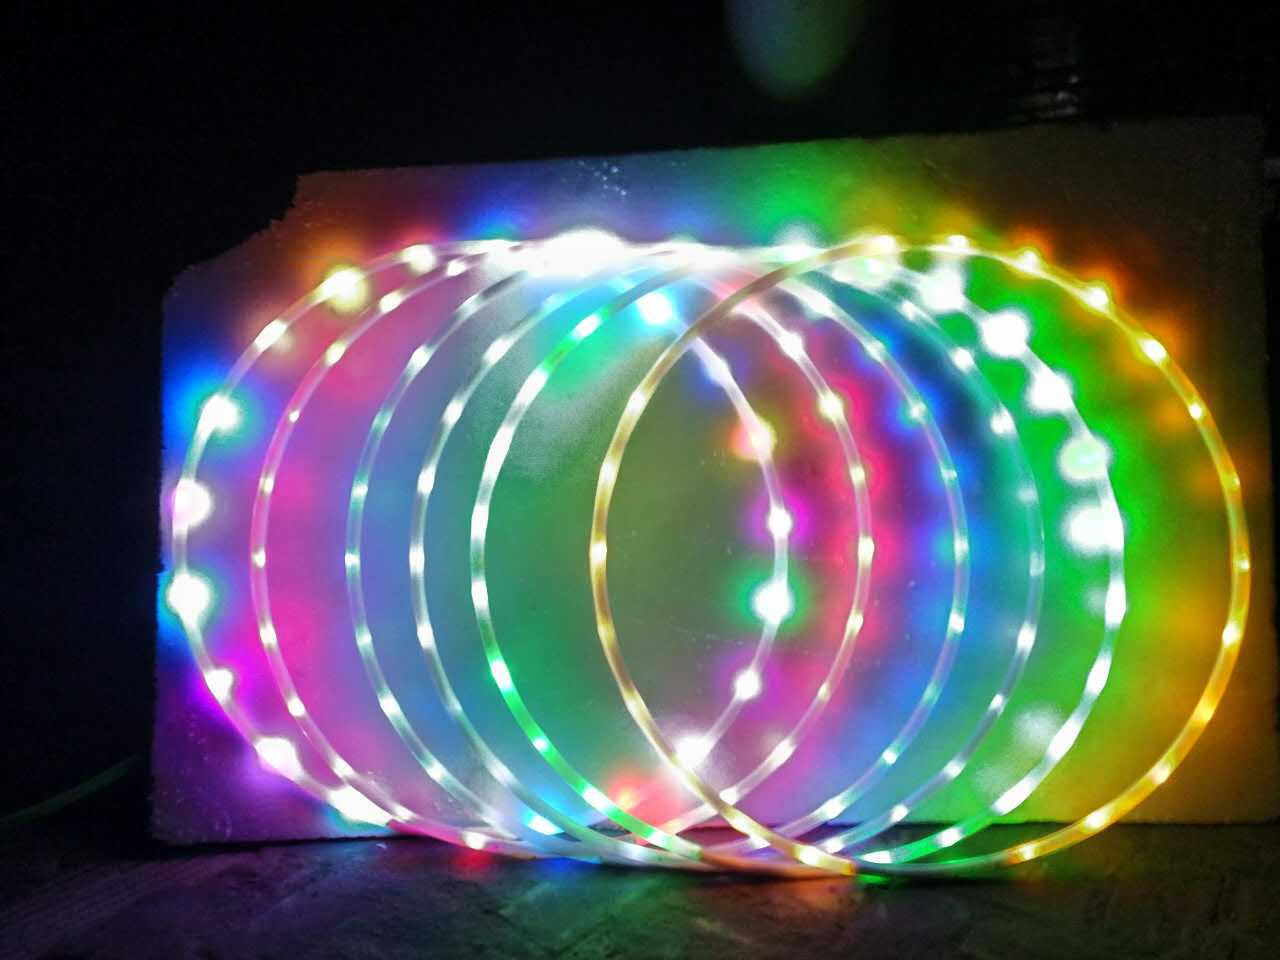 厂家直销LED灯发光呼啦圈 发光玩具 七彩可拆卸充电呼啦圈